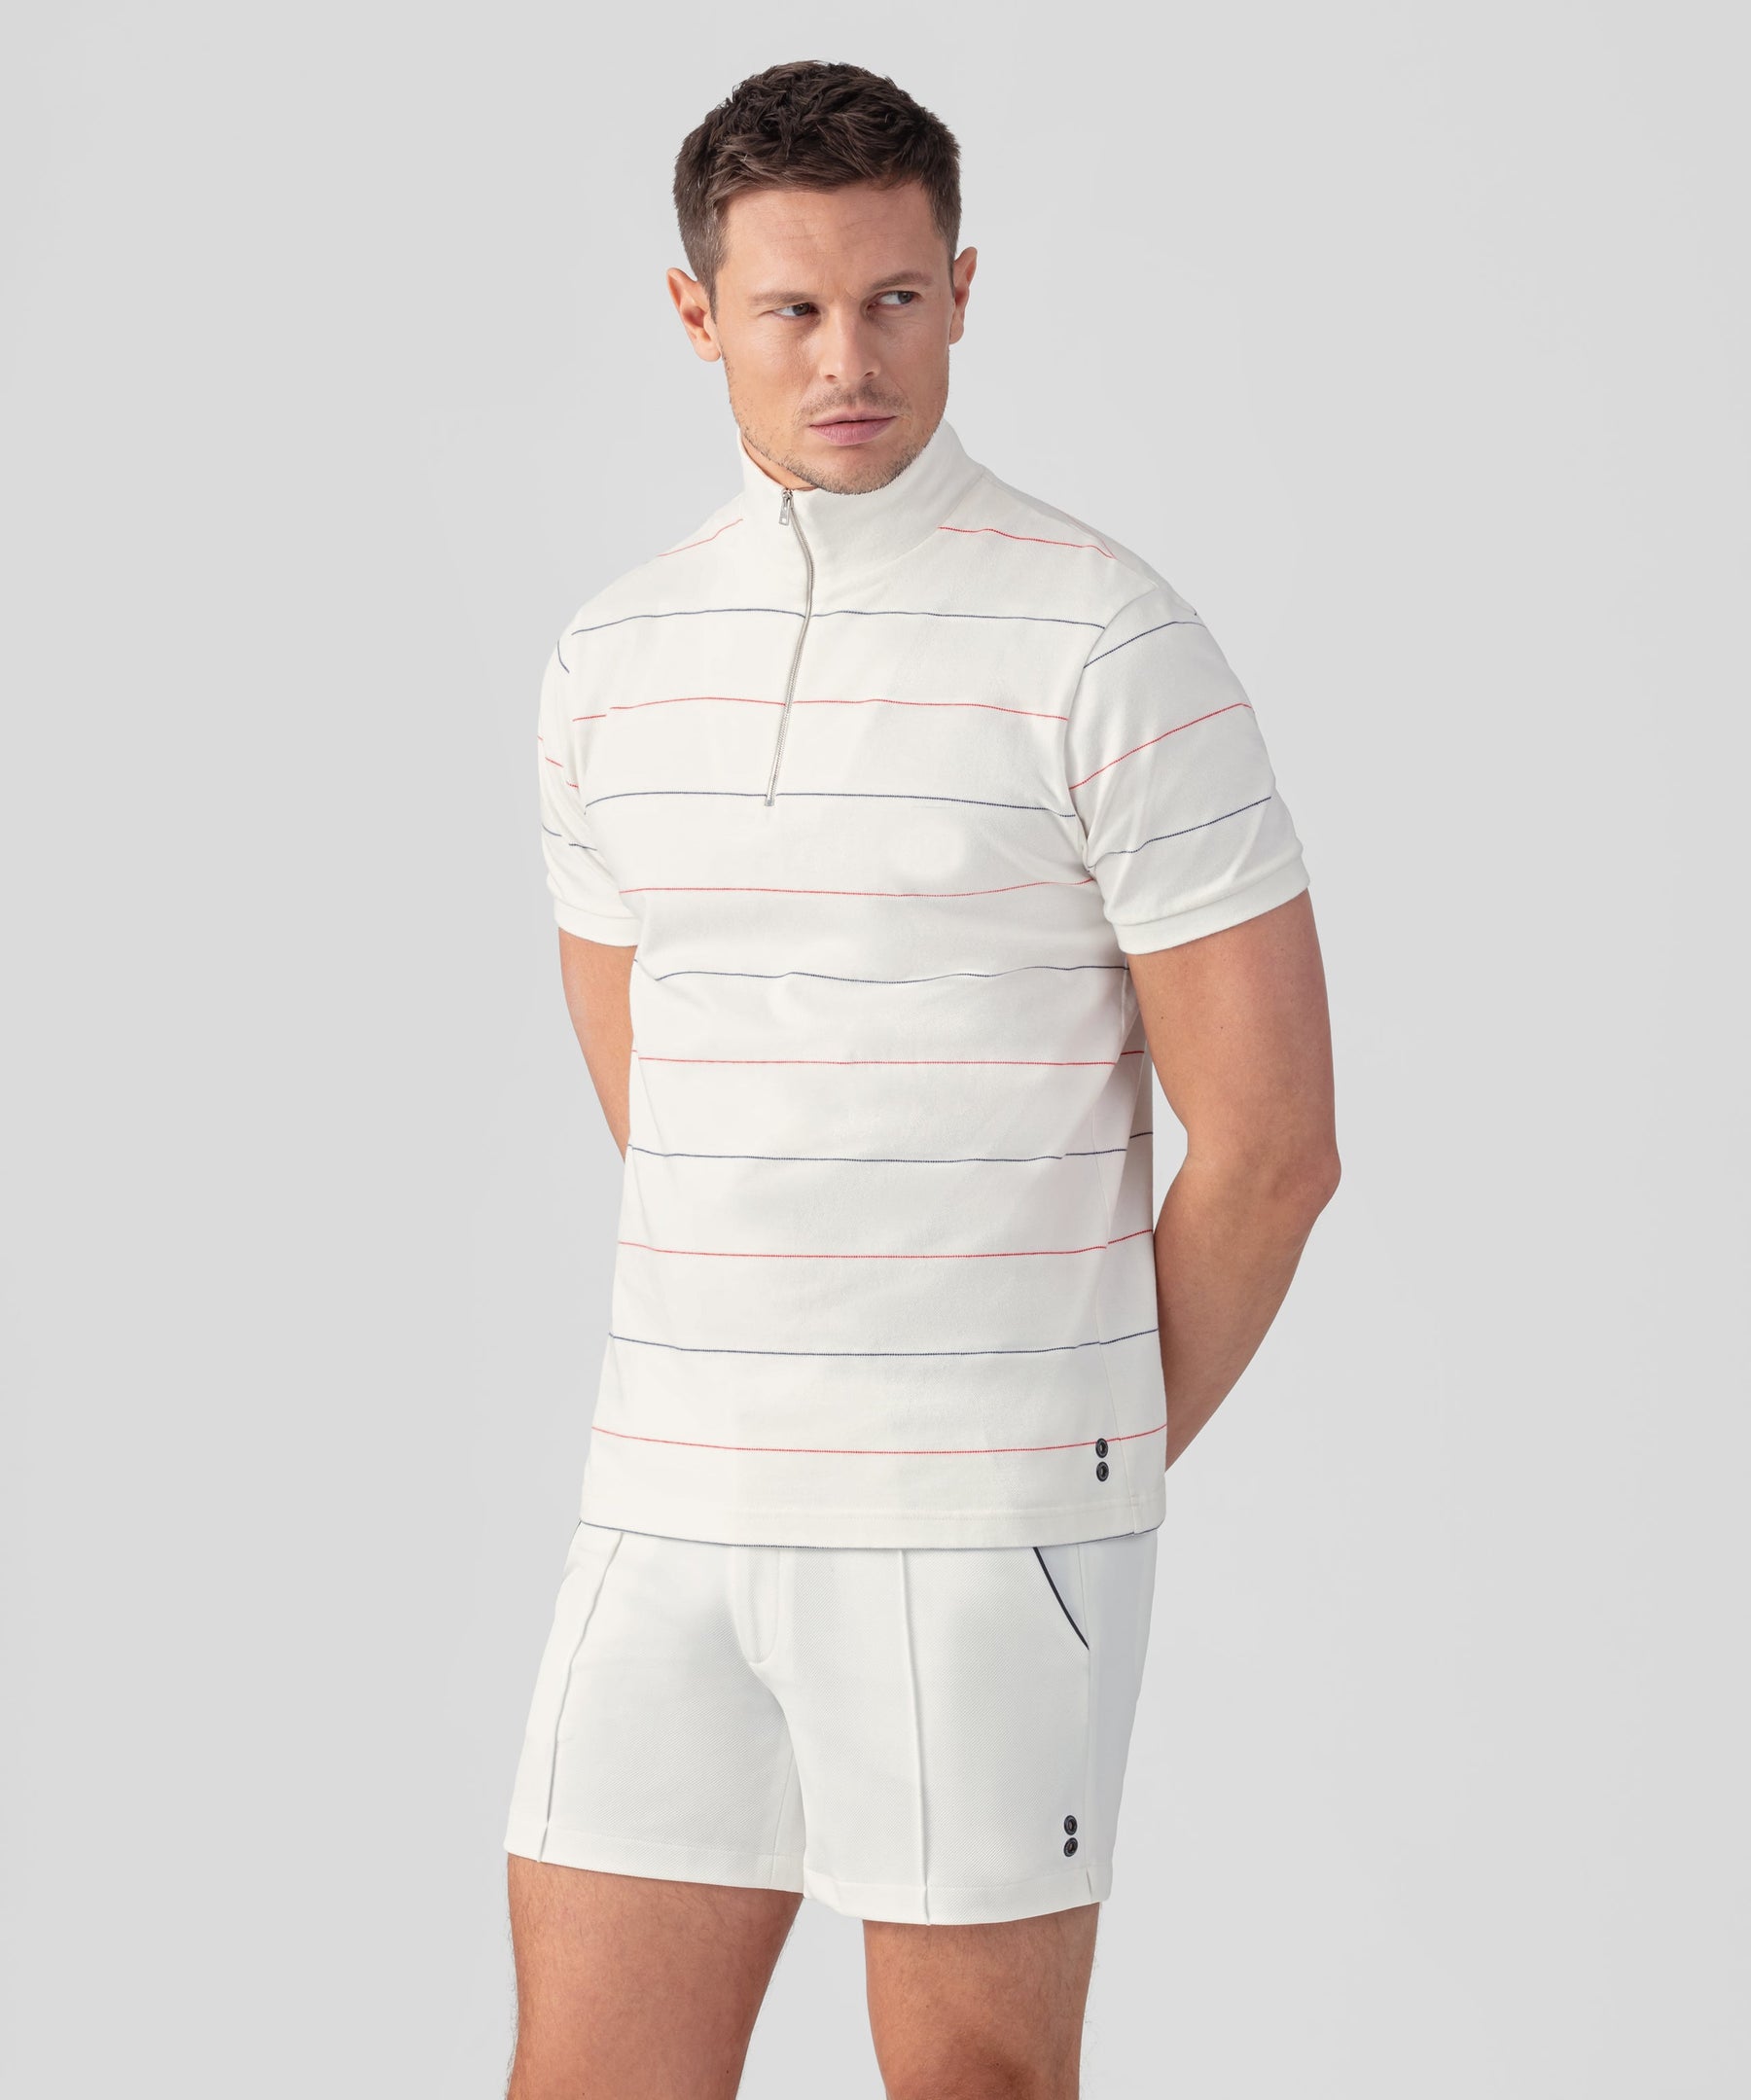 Cotton Piqué RD Polo w. Tennis Stripes: Off White